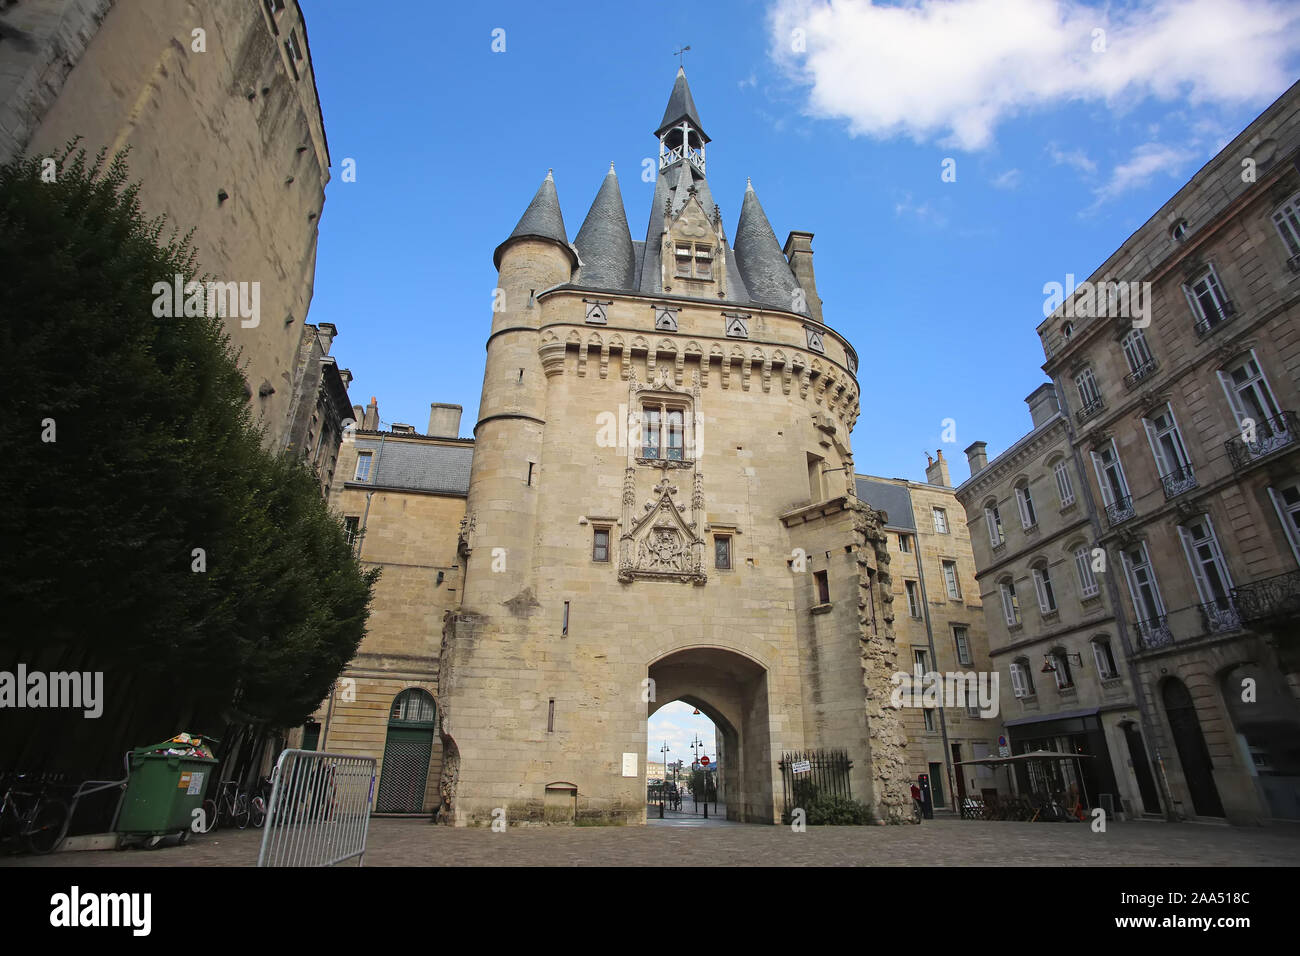 Die Tür oder Tor Porte Cailhau ist wunderschön gotischen Architektur aus dem 15. Jahrhundert. Es ist eine defensive Tor und Triumphbogen. Bordeaux, Franc Stockfoto